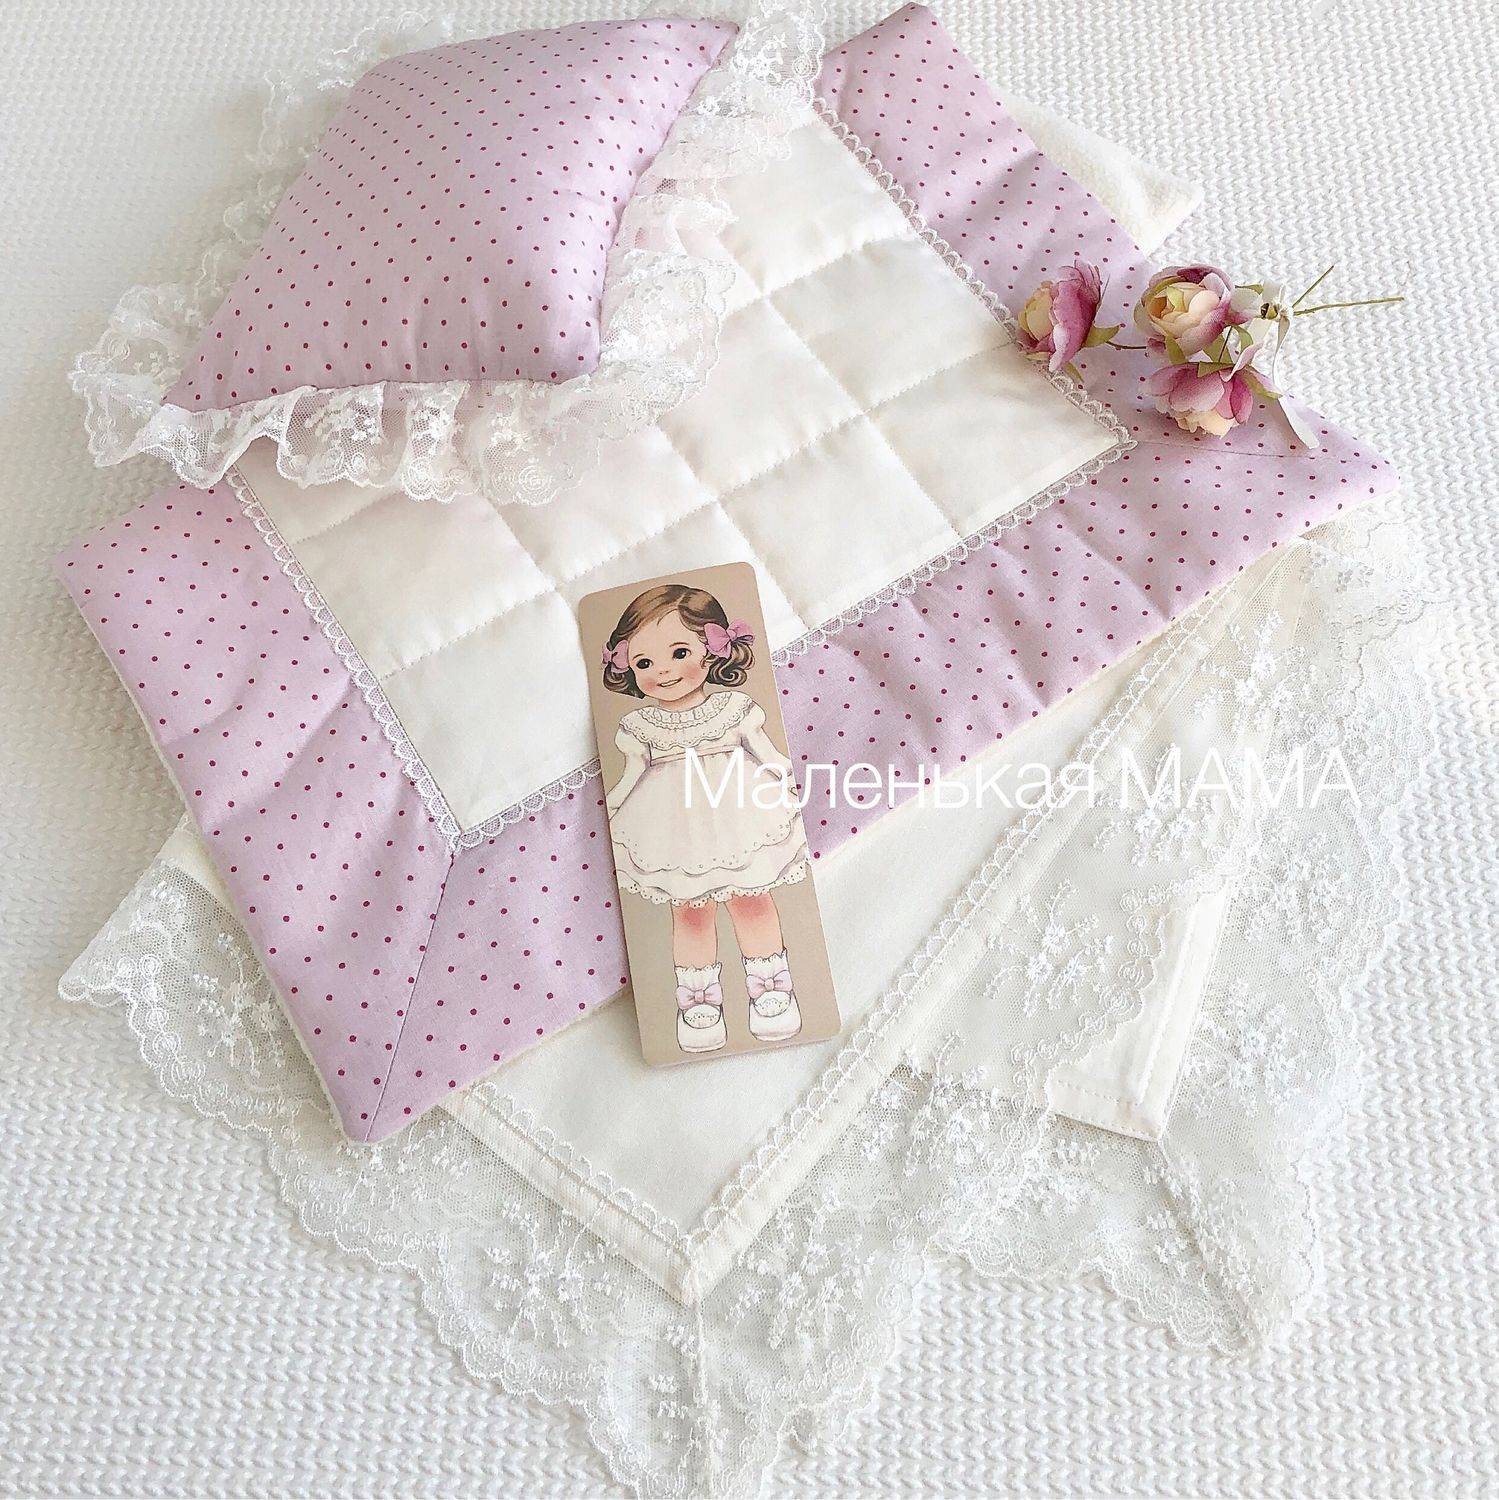 Постельное белье для кукол и кукольной кровати: своими руками, как сшить?